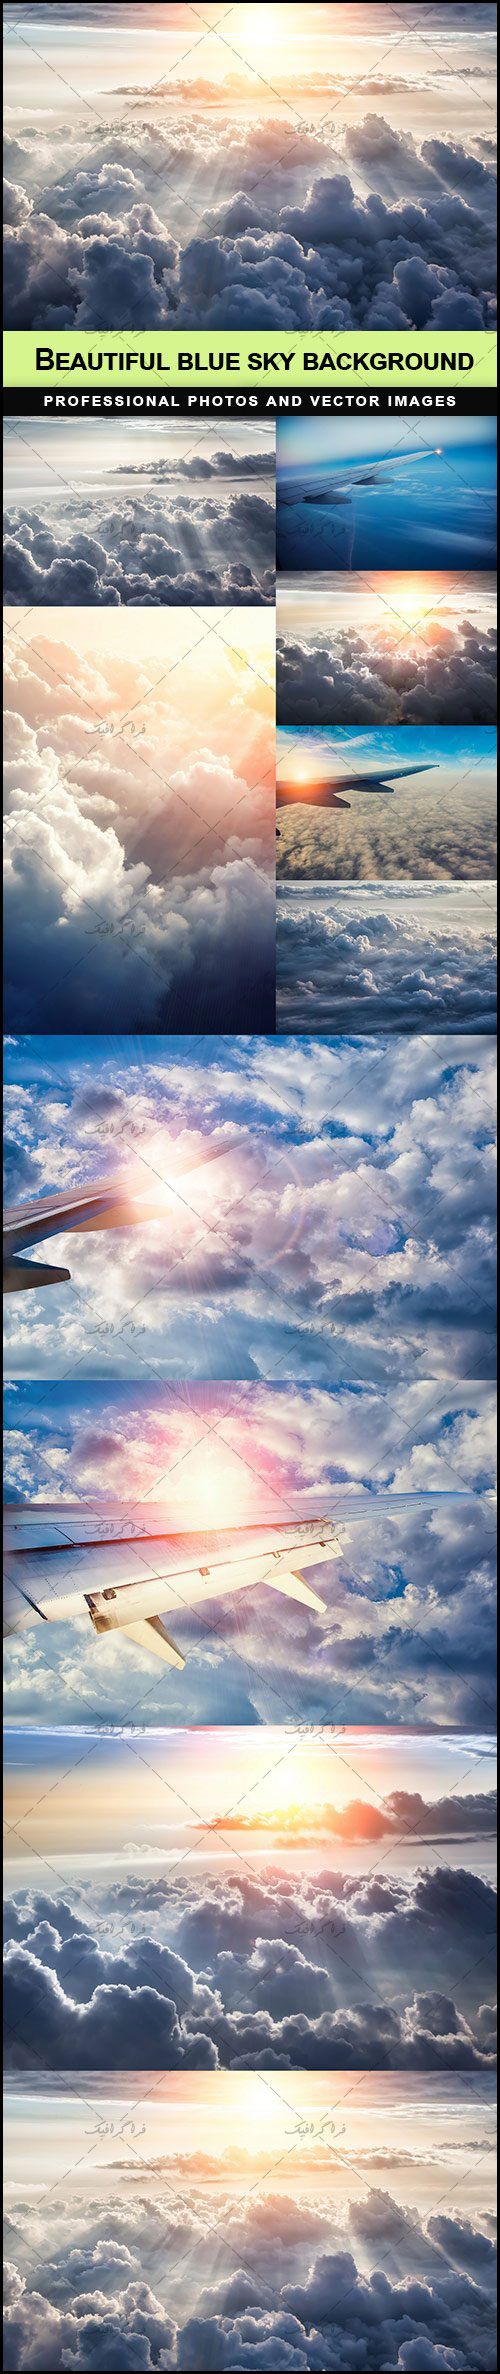 دانلود تصاویر استوک آسمان آبی